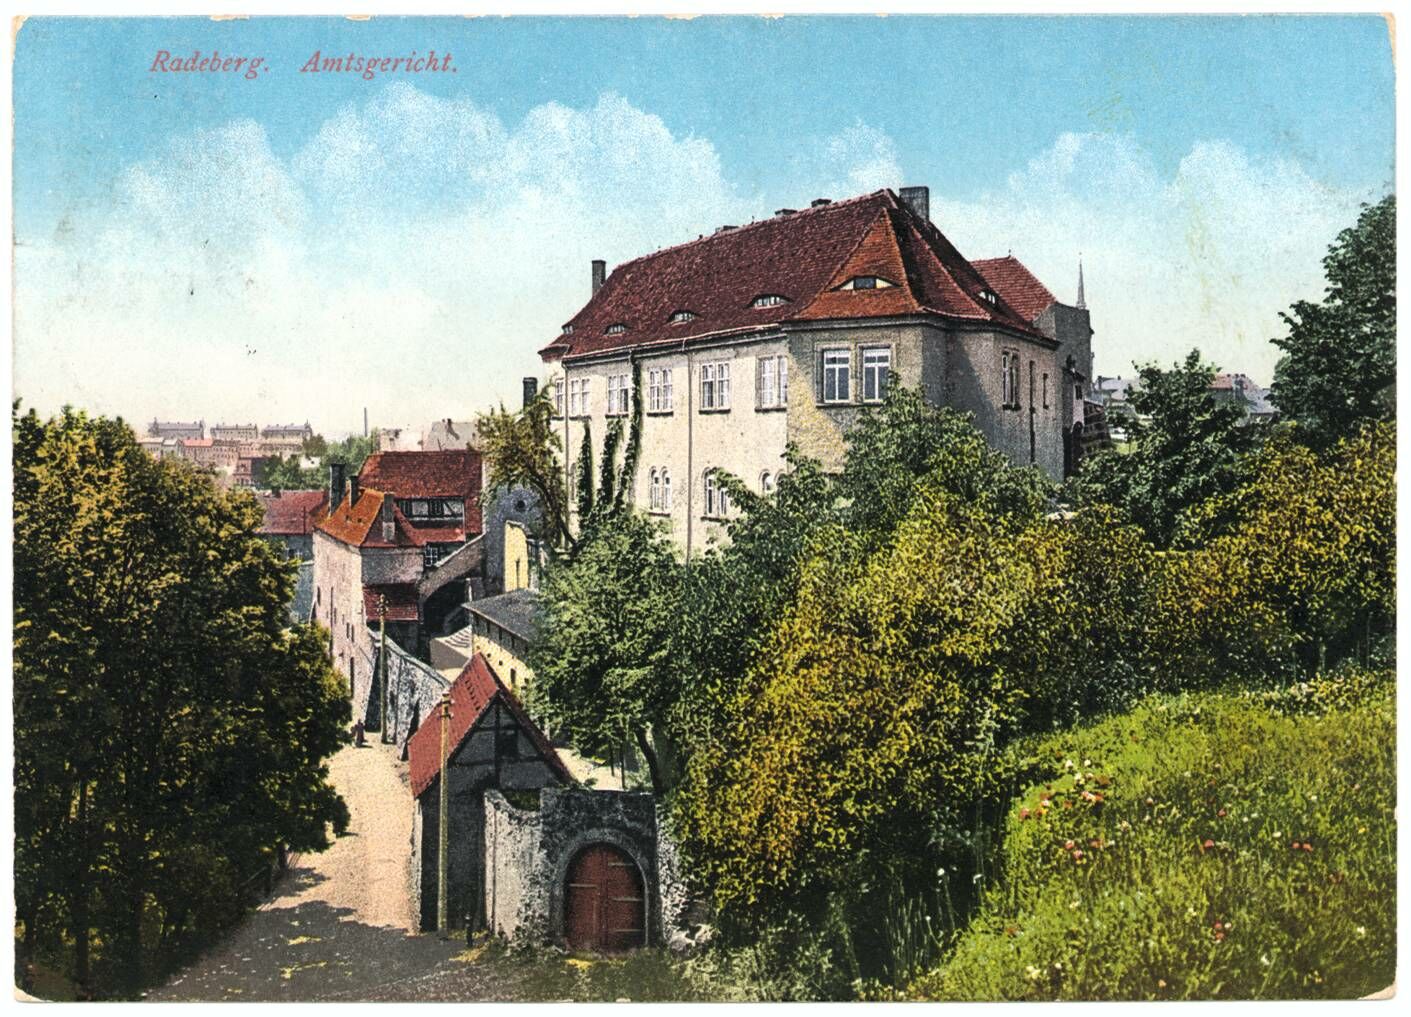 Blick auf den hinteren Schlosseingang, die Hauptburg, die Schlossmauer und den Weg, der an der Schlossmauer entlang führt. Es handelt sich um ein kolorierte Postkarte von 1915.